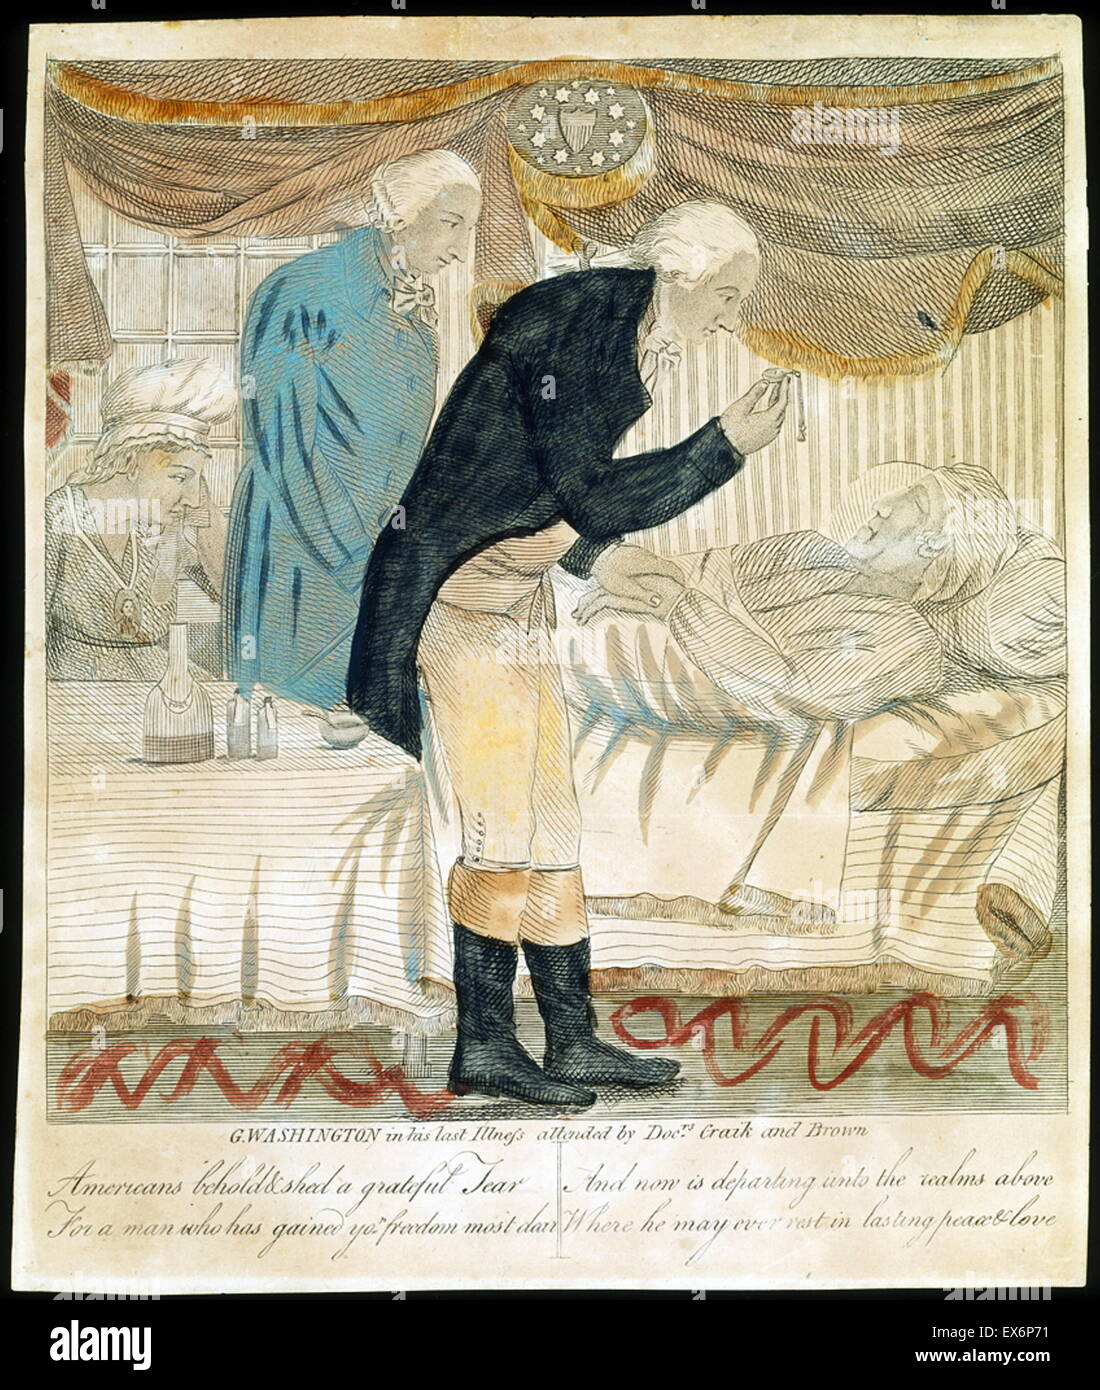 George Washington dans sa dernière maladie, assisté par des médecins Craik et Brown. Gravure d'un artiste non identifié, début du xixe siècle Banque D'Images